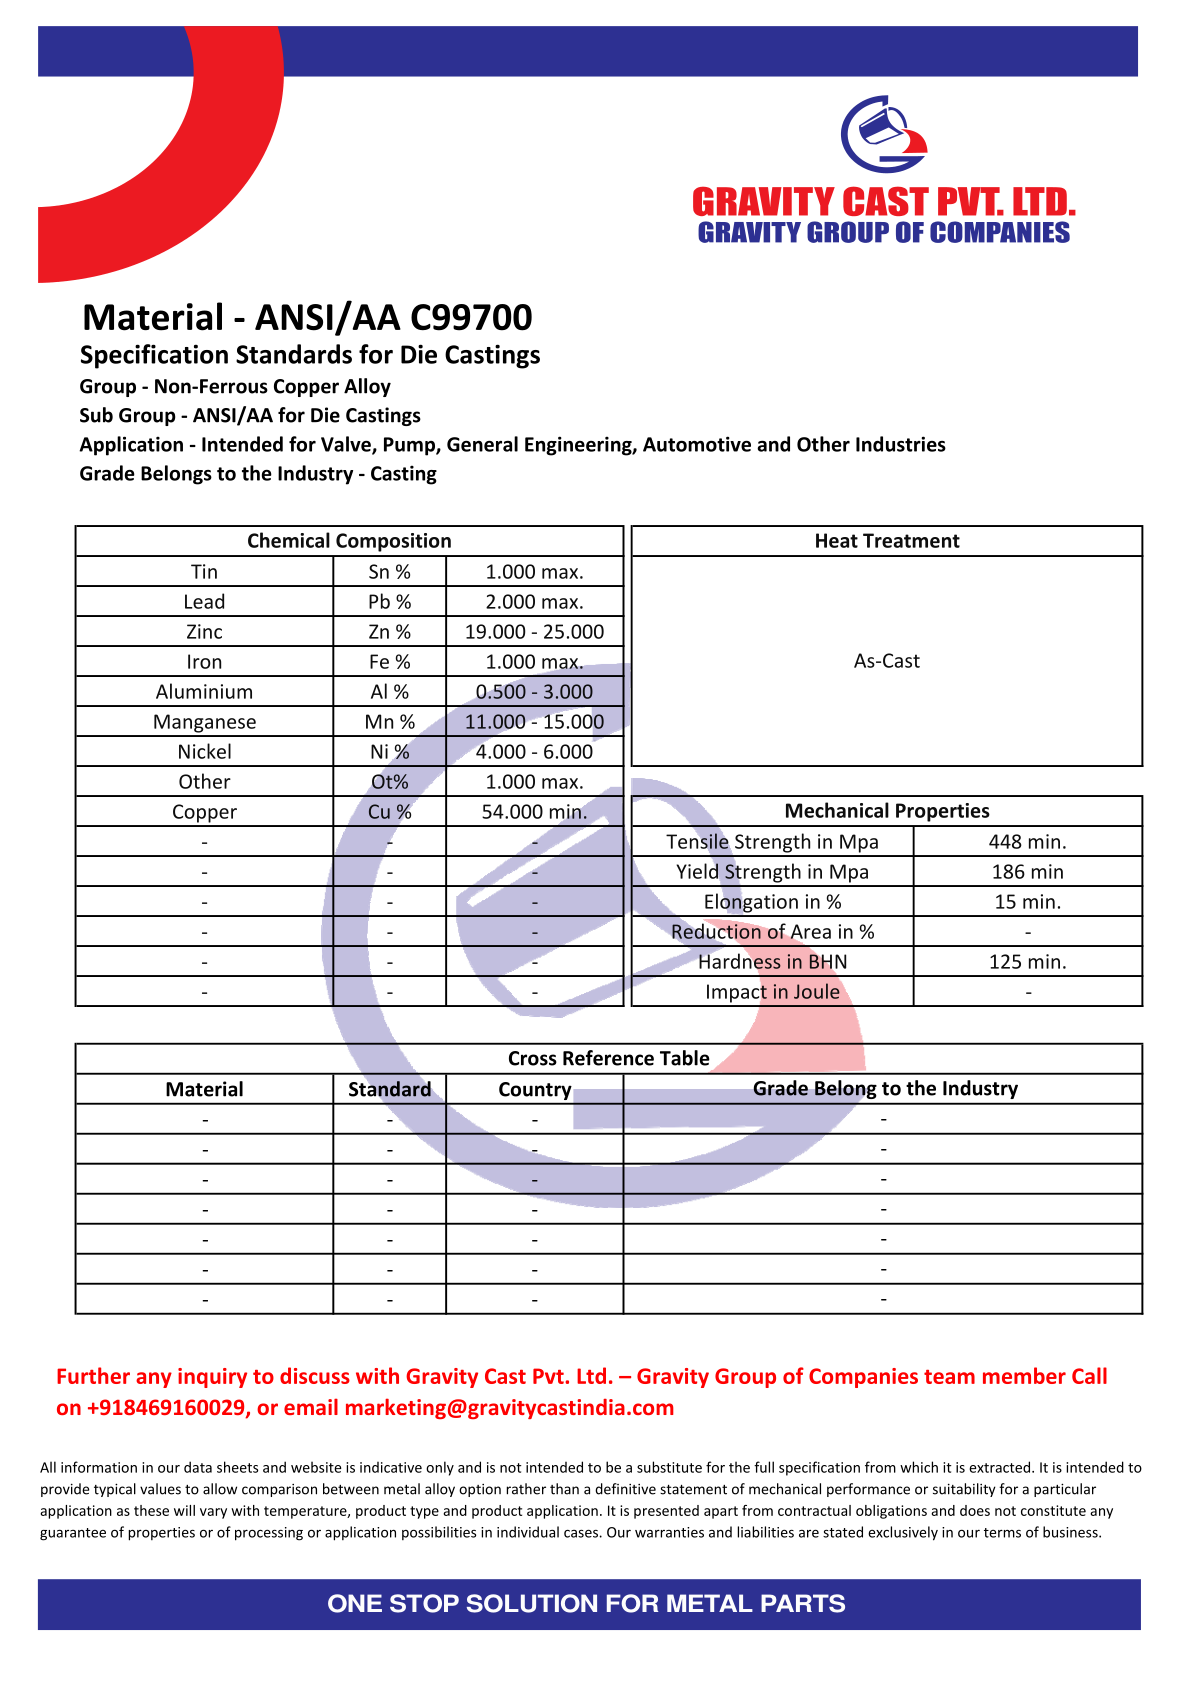 ANSI AA C99700.pdf